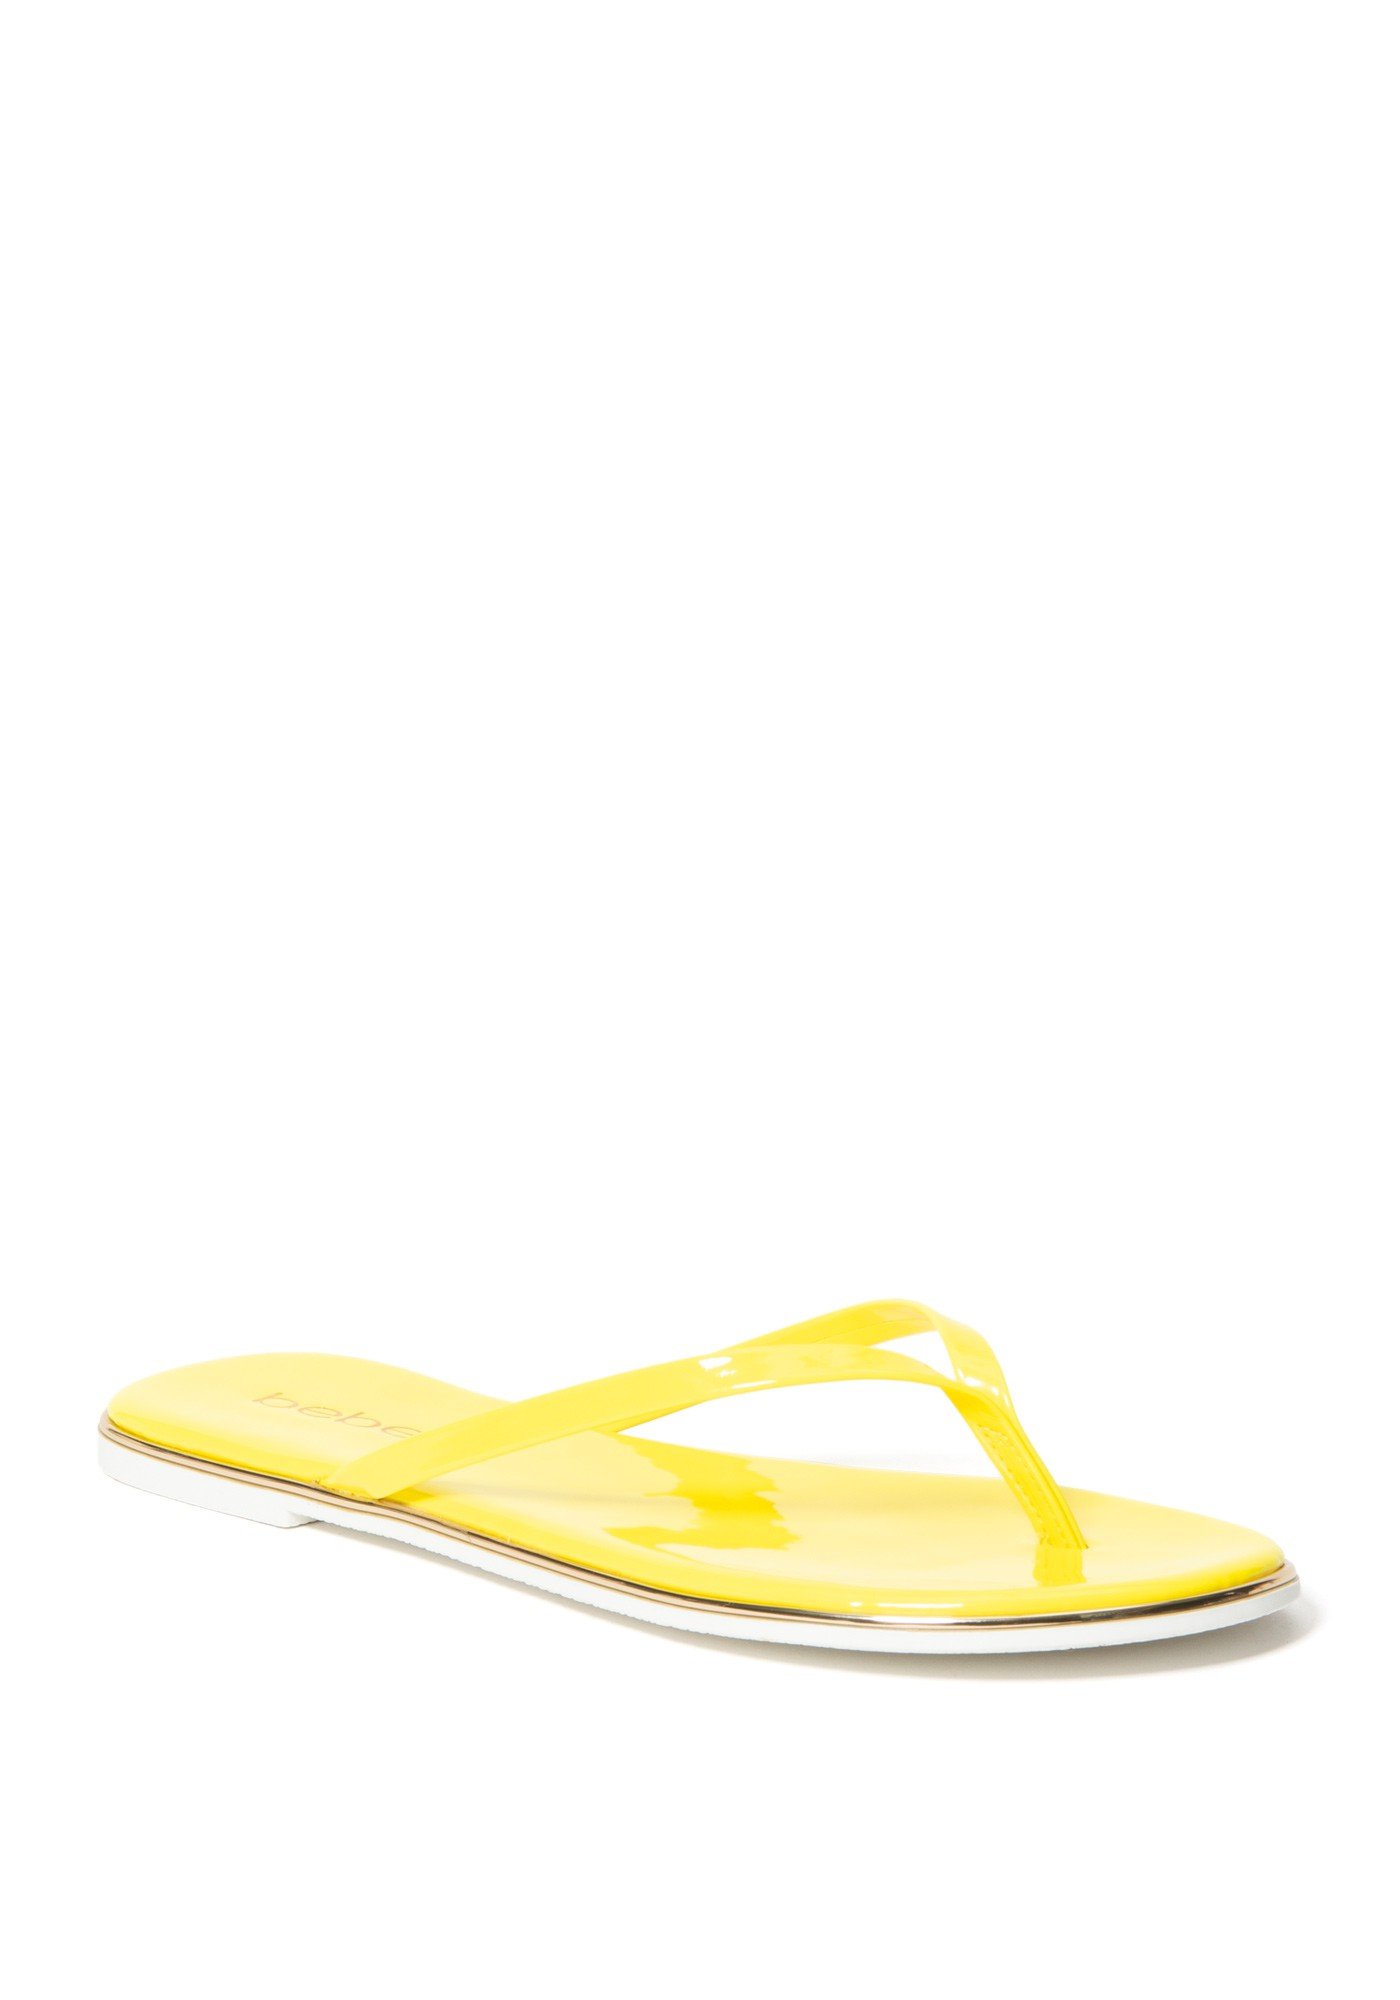 Bebe Women's Ilistra-W Flip Flops, Size 6.5 in Neon Yellow Synthetic